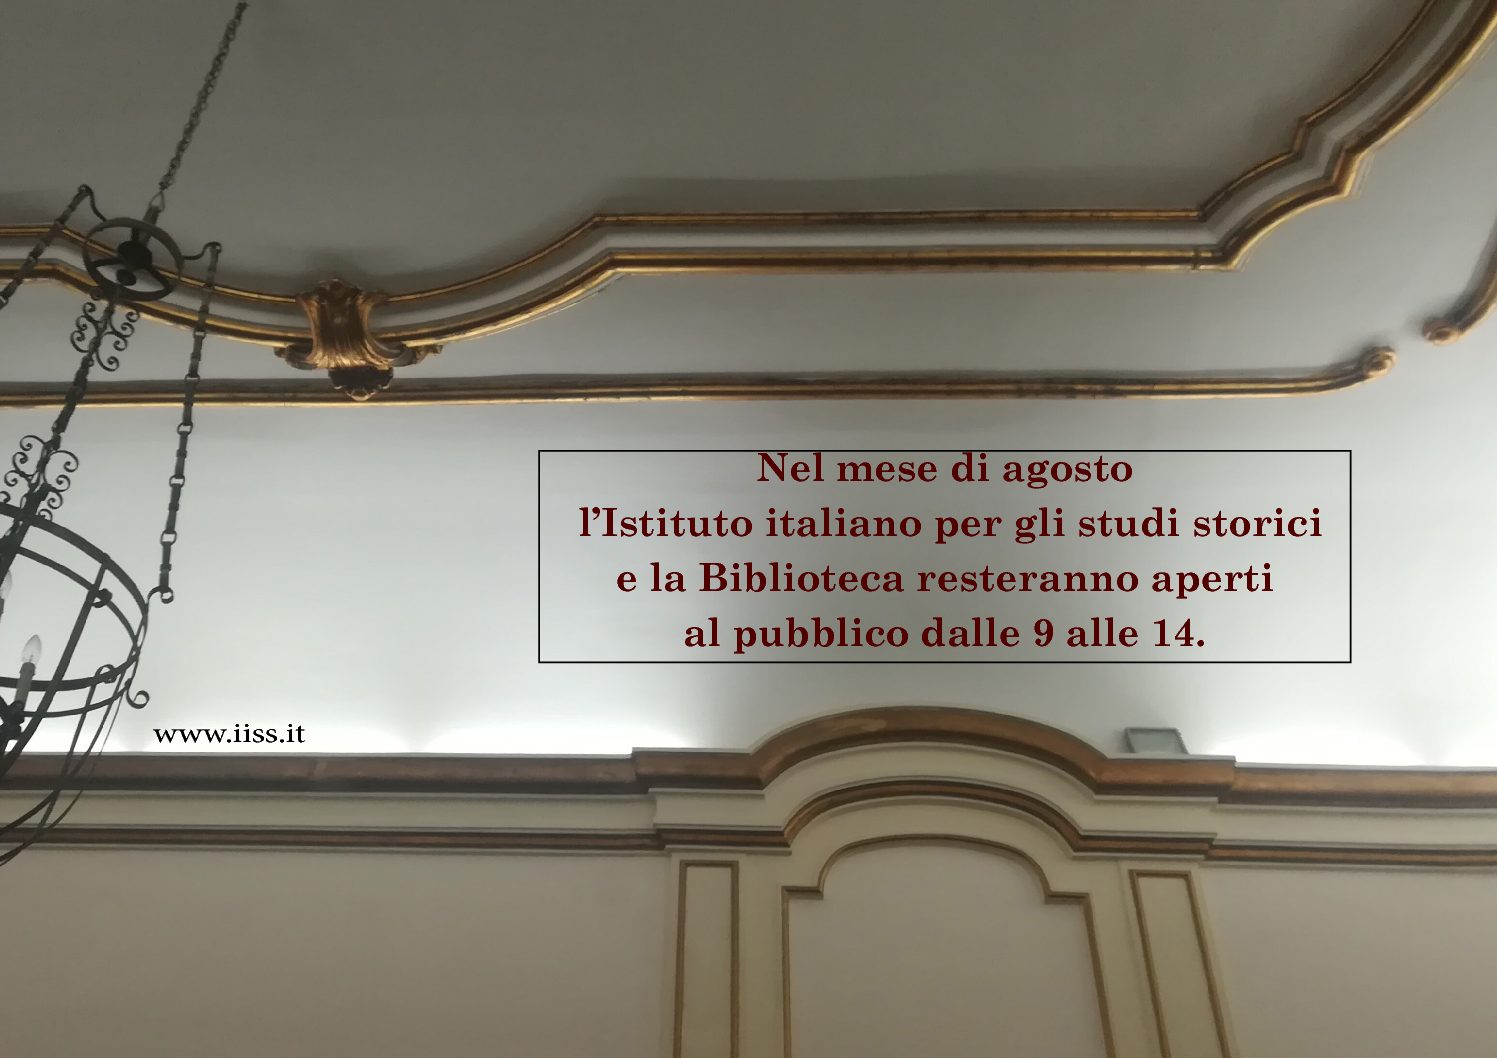 Nel mese di agosto l’Istituto italiano per gli studi storici e la Biblioteca resteranno aperti al pubblico dalle 9 alle 14.